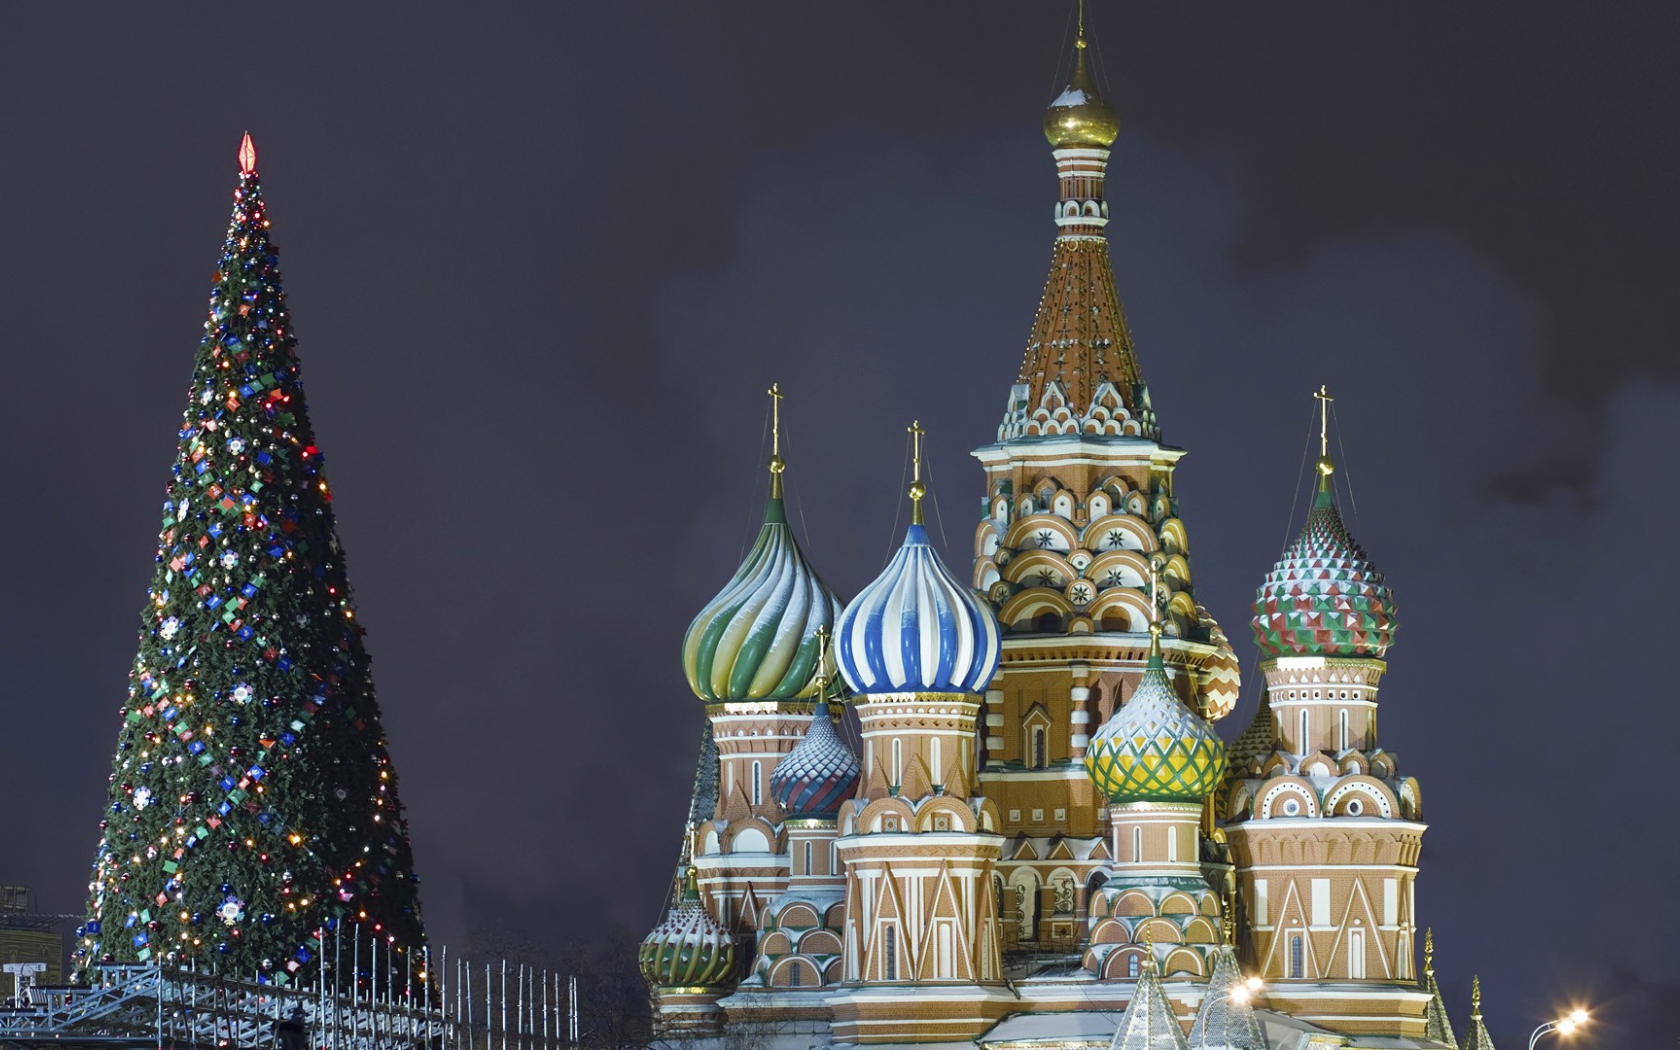 Новогодняя елка 2014 в Москве